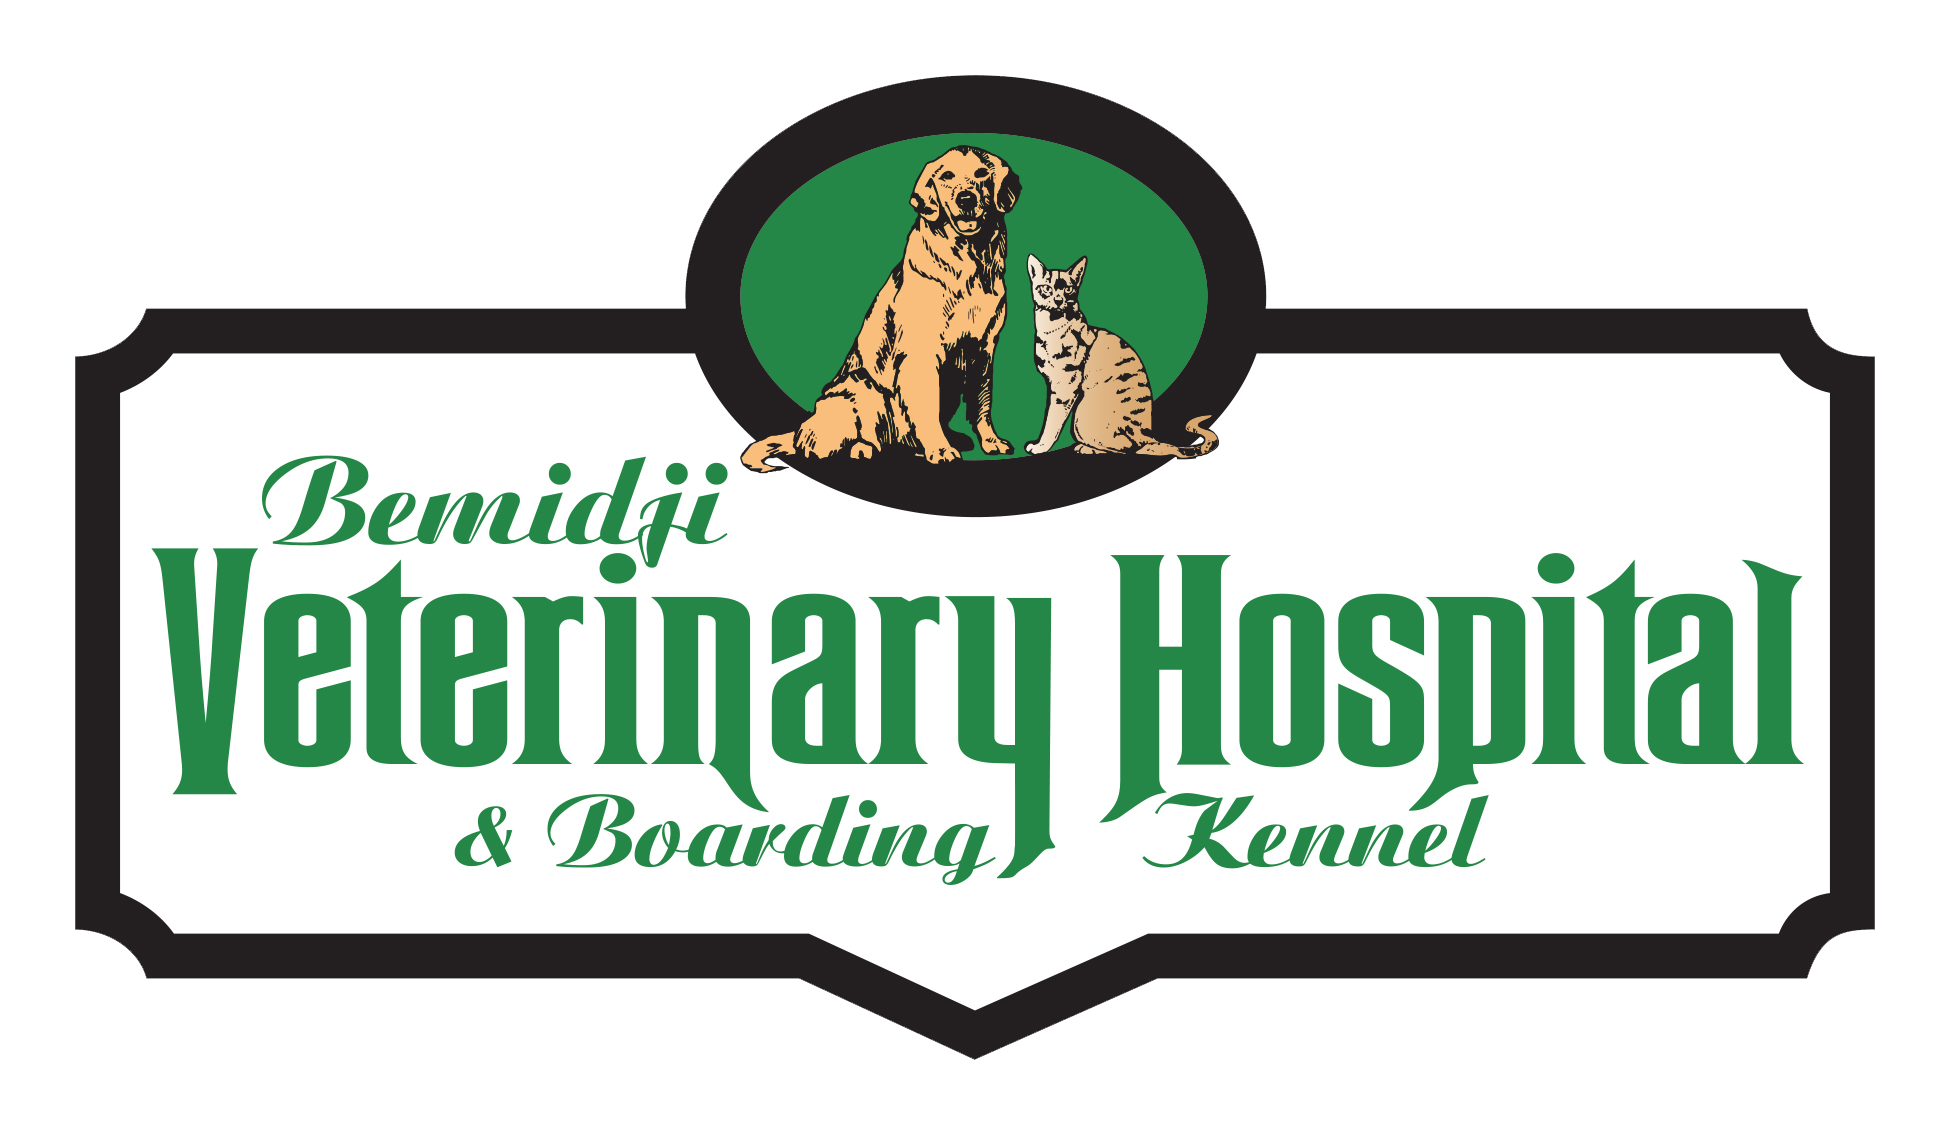 Bemidji Veterinary Hospital & Boarding Kennel